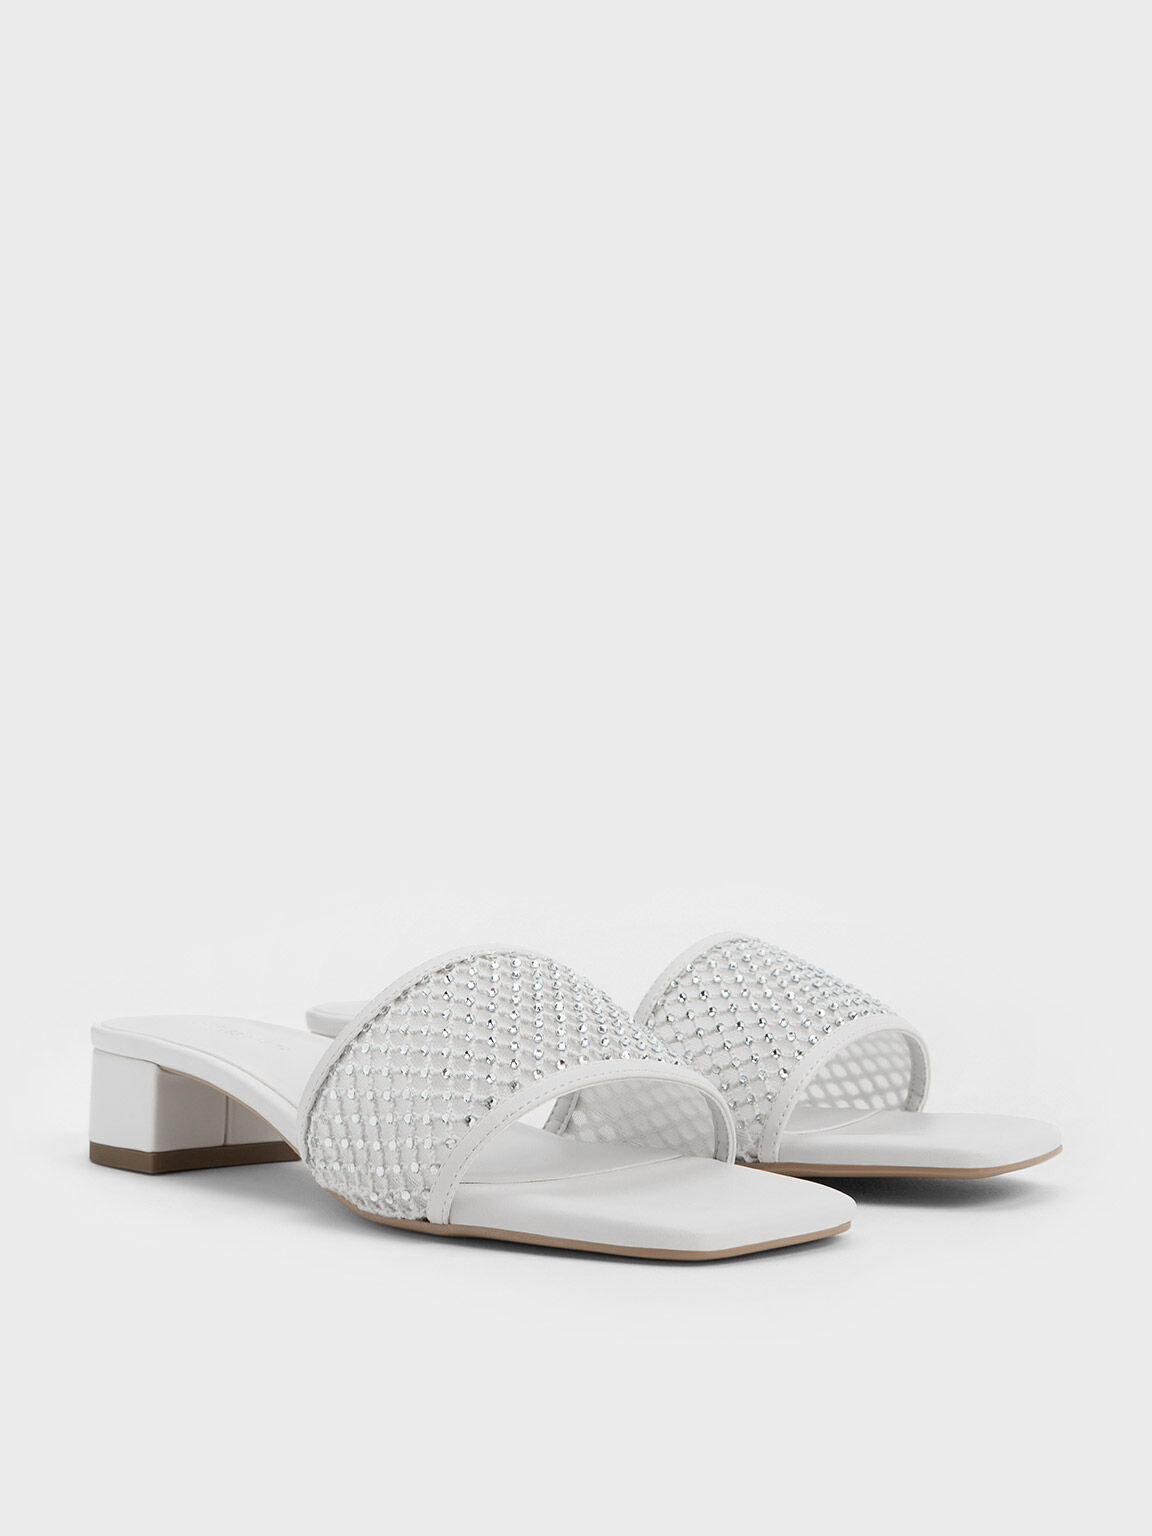 White Saeda 85 crystal-embellished satin sandals | Jimmy Choo | MATCHES UK